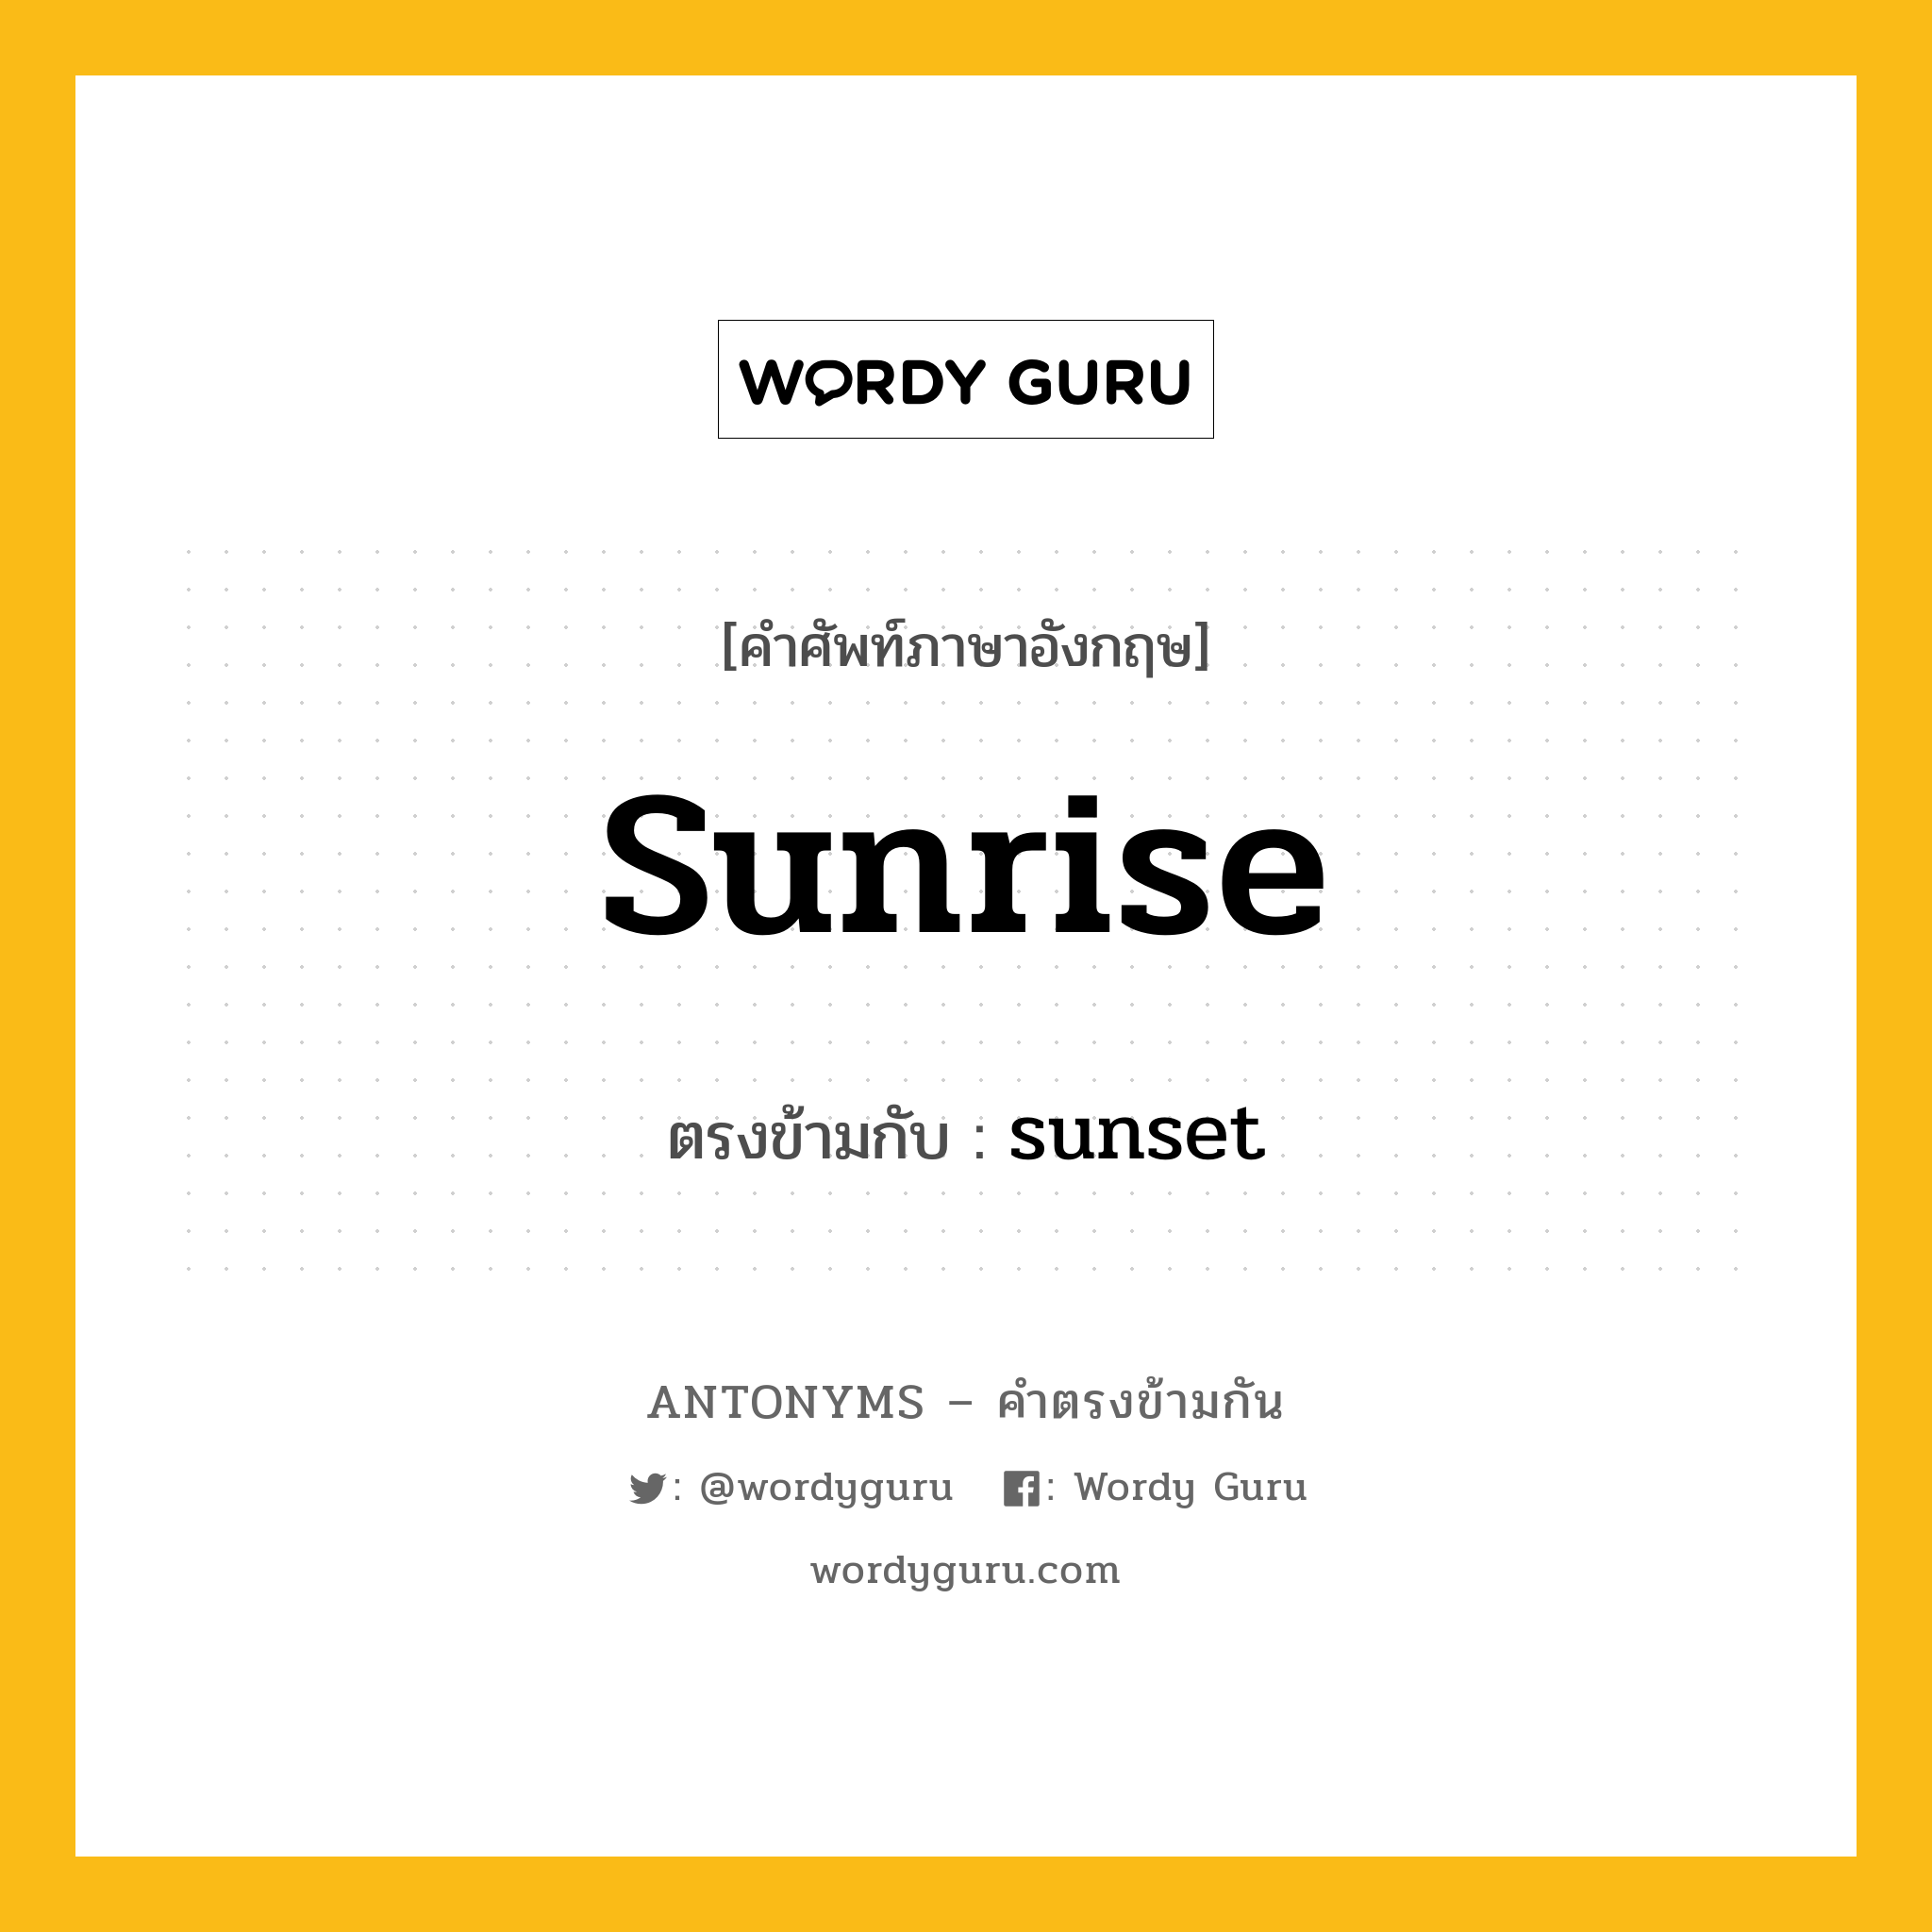 sunrise เป็นคำตรงข้ามกับคำไหนบ้าง?, คำศัพท์ภาษาอังกฤษ sunrise ตรงข้ามกับ sunset หมวด sunset